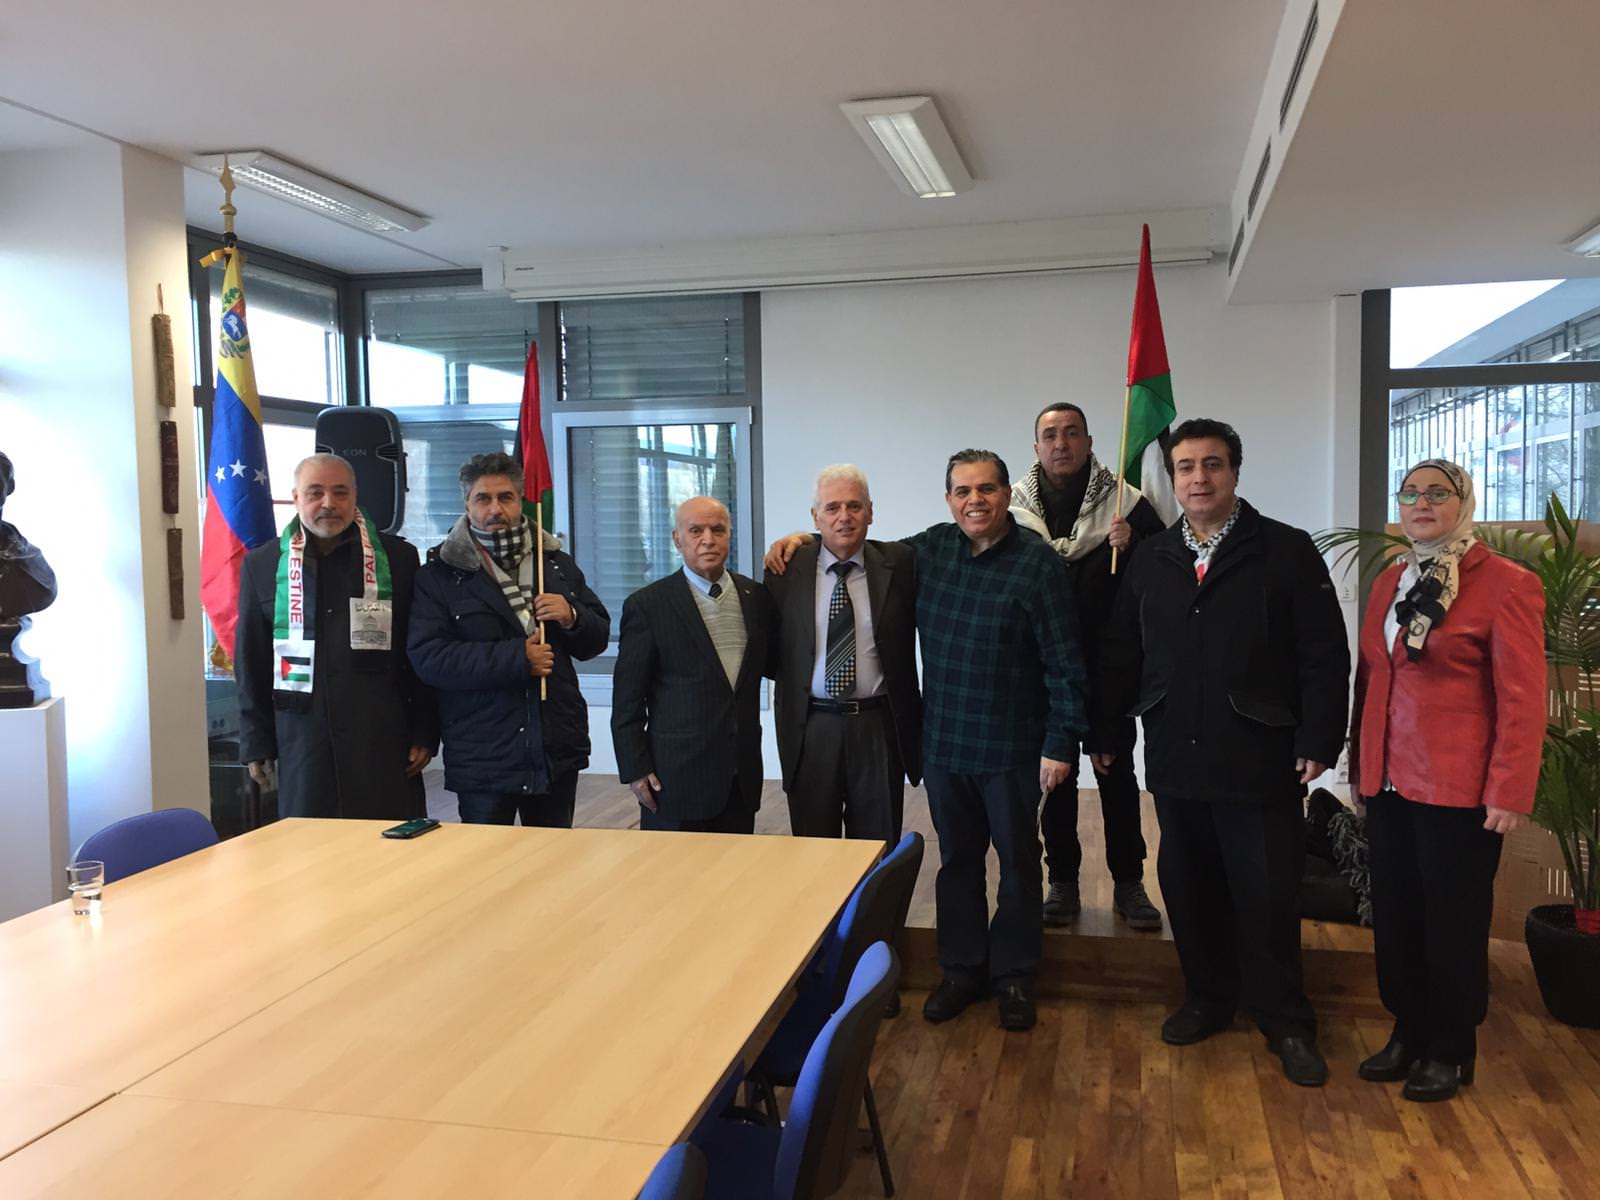 وفد من هيئة المؤسسات والجمعيات الفلسطينية والعربية في برلين بزيارة السّفارة الفنزويلية في المانيا